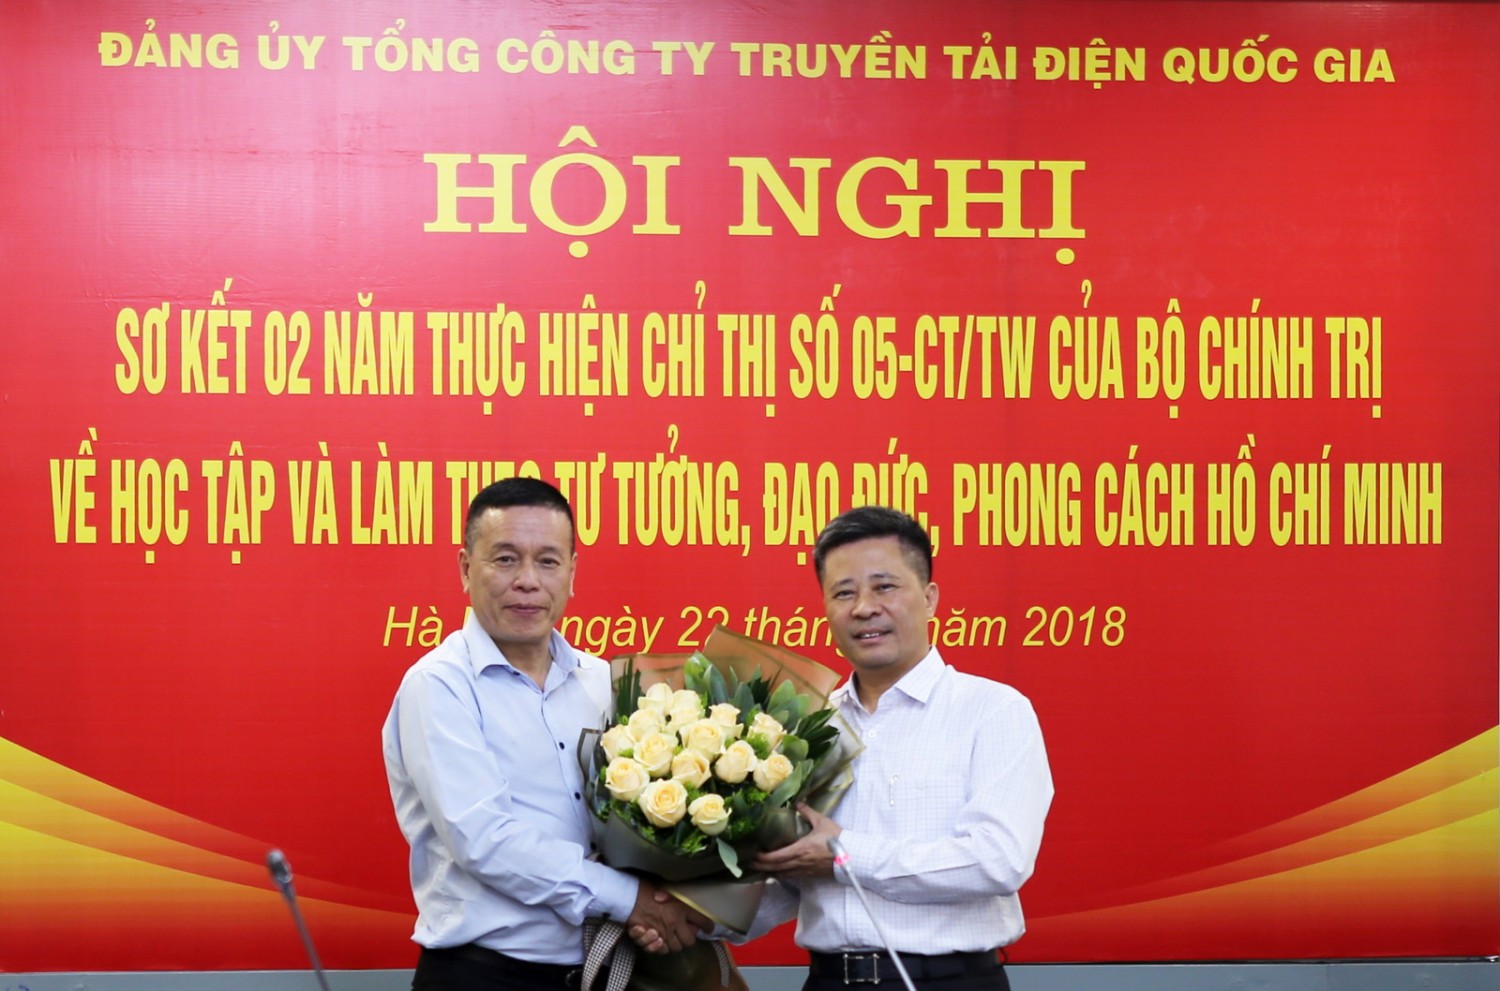 Thư của Tổng giám đốc Vũ Ngọc Minh gửi CBCNV Tổng công ty Truyền tải điện Quốc gia